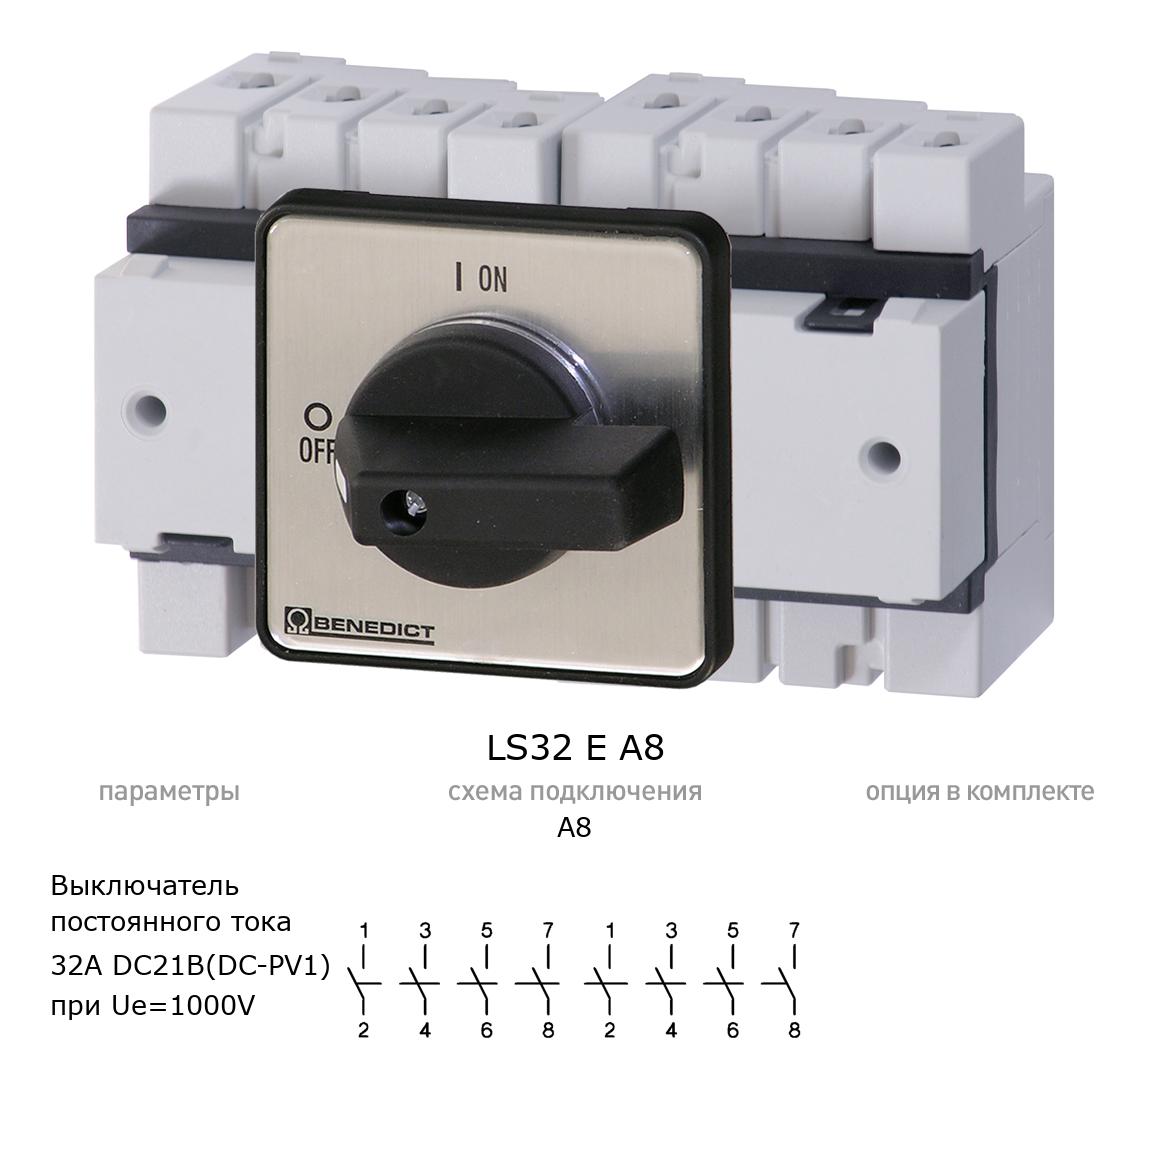 Кулачковый переключатель для постоянного тока (DC) LS32 E A8 BENEDICT